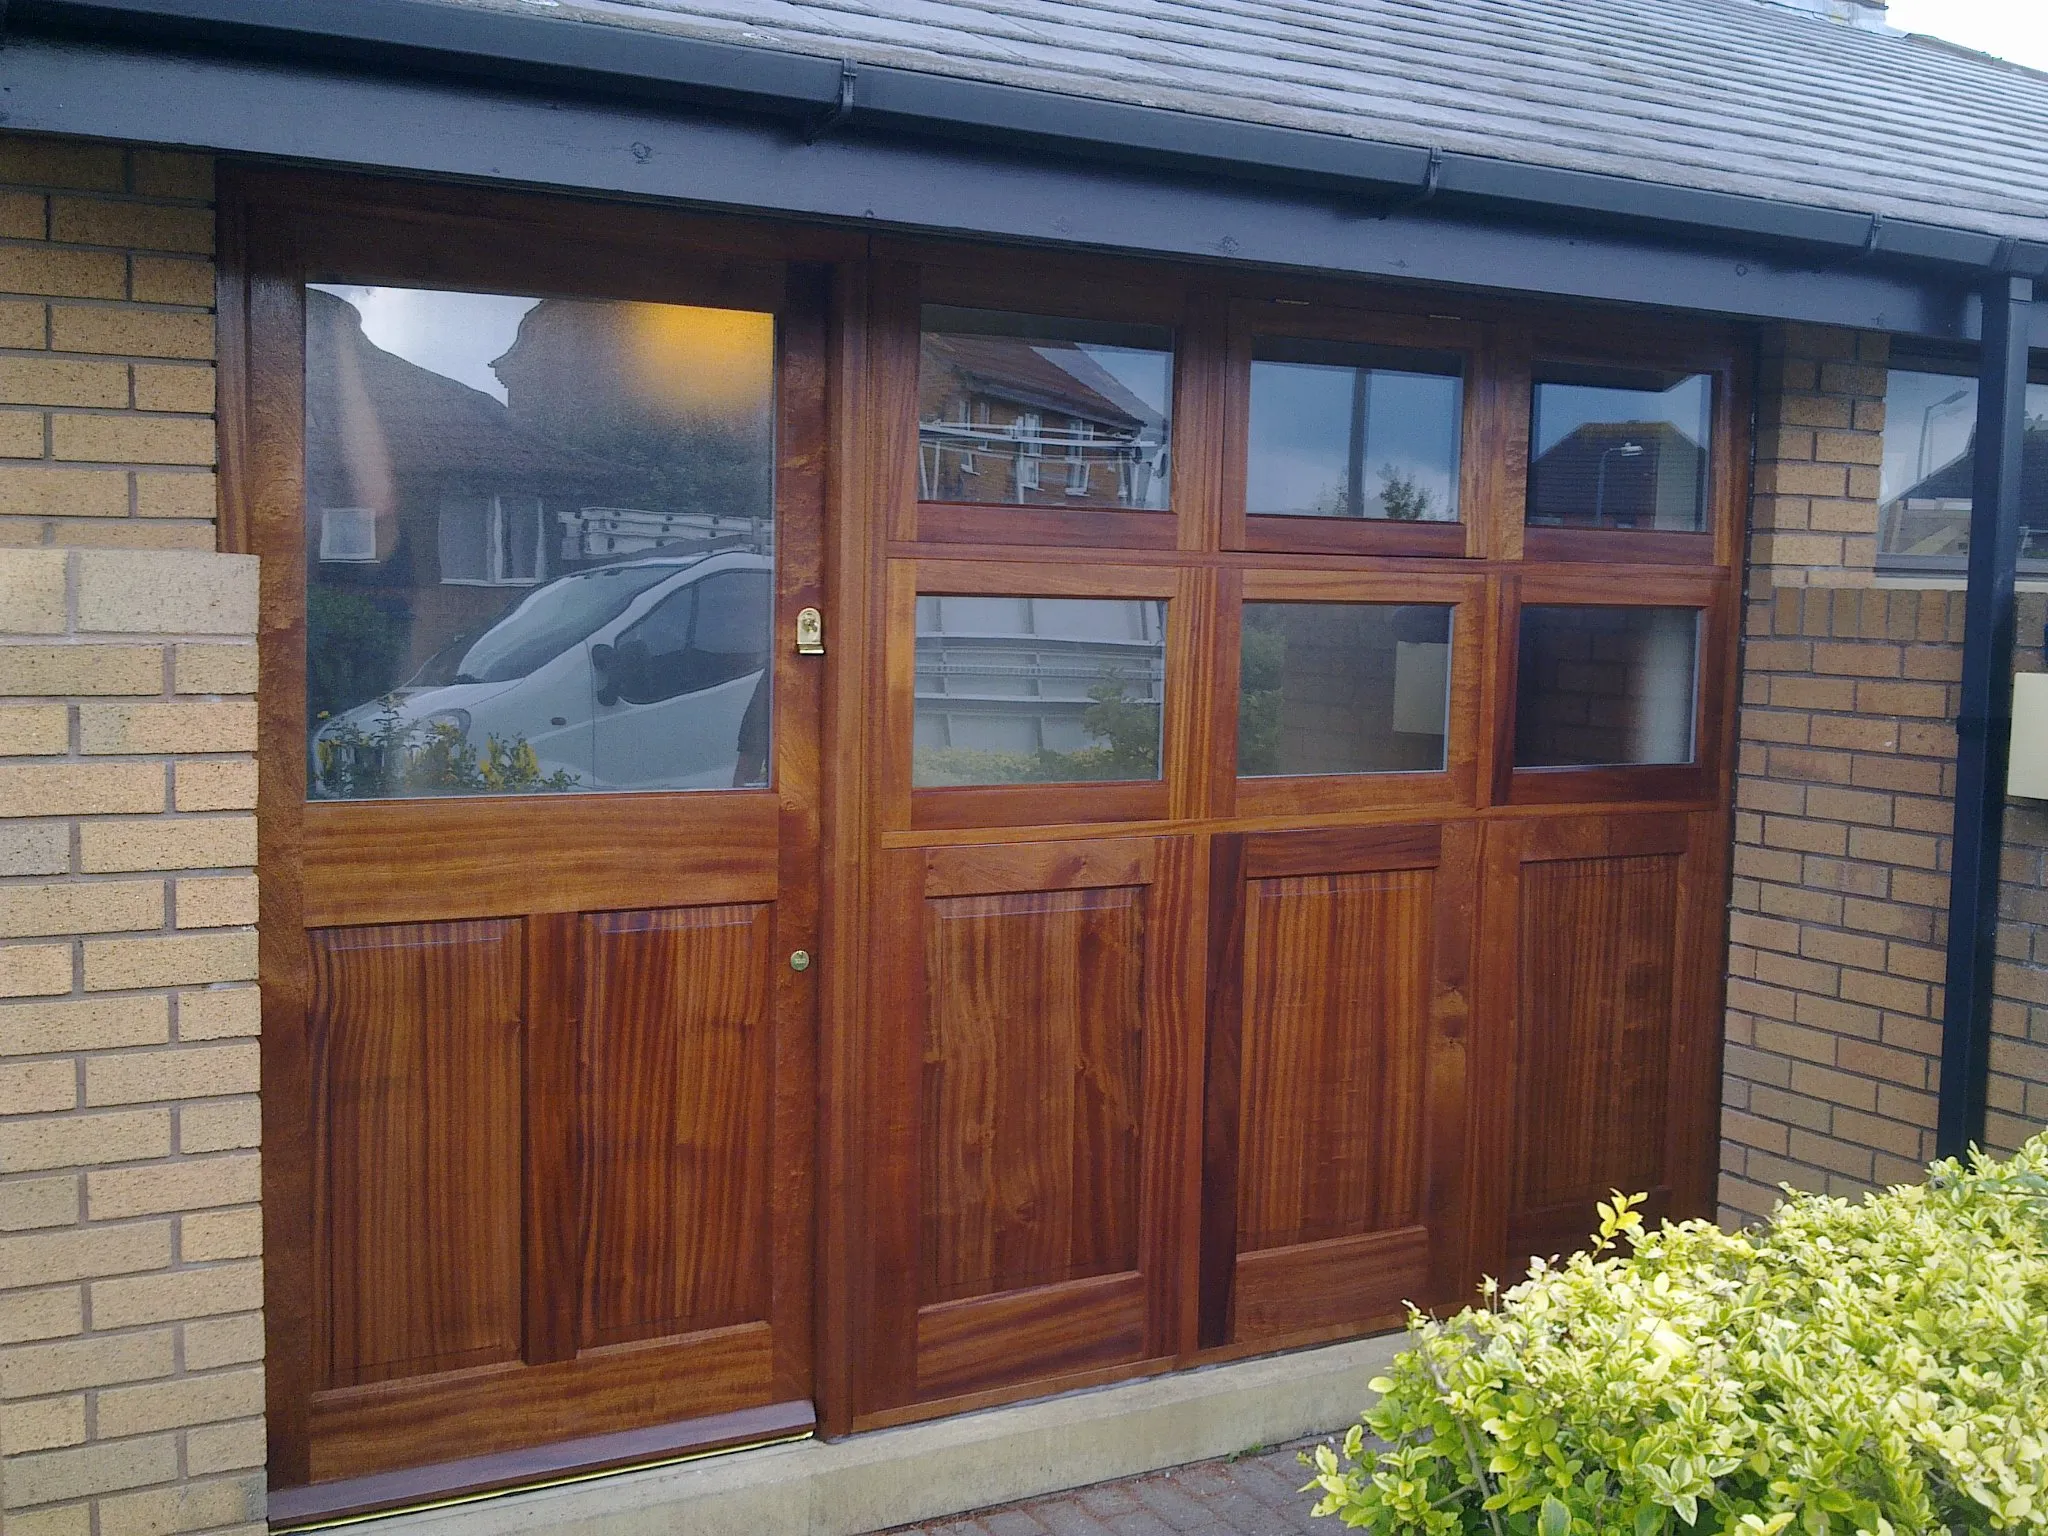 a wooden garage door with glass panels